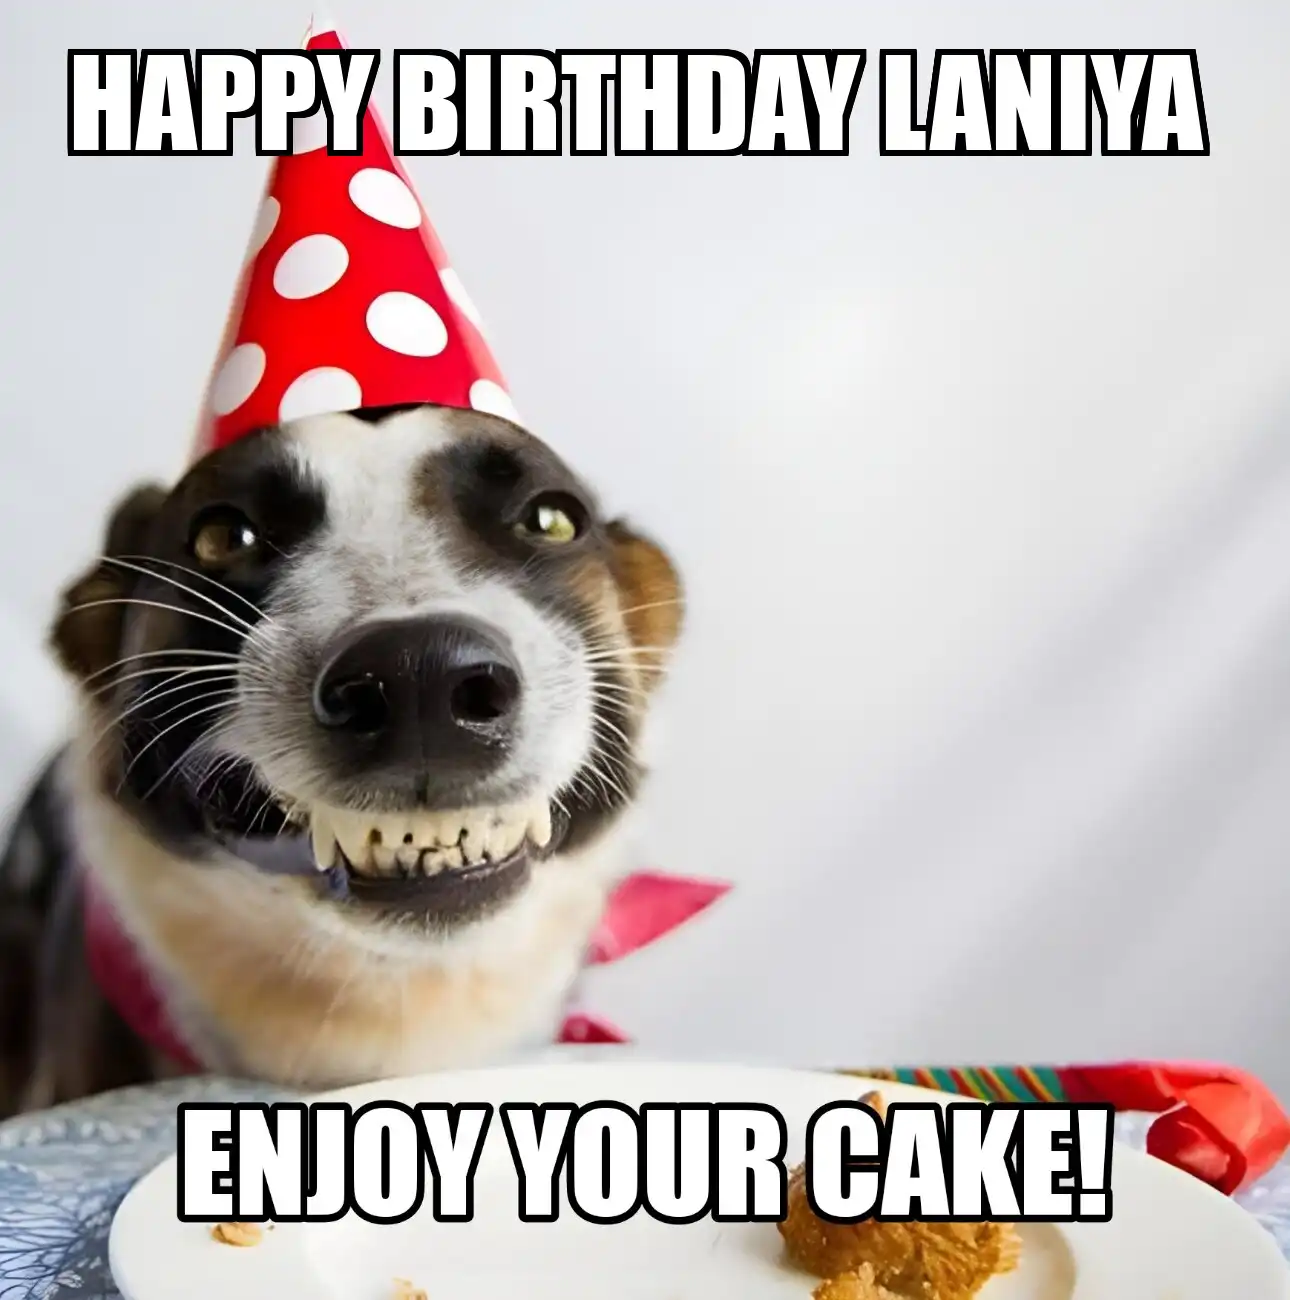 Happy Birthday Laniya Enjoy Your Cake Dog Meme